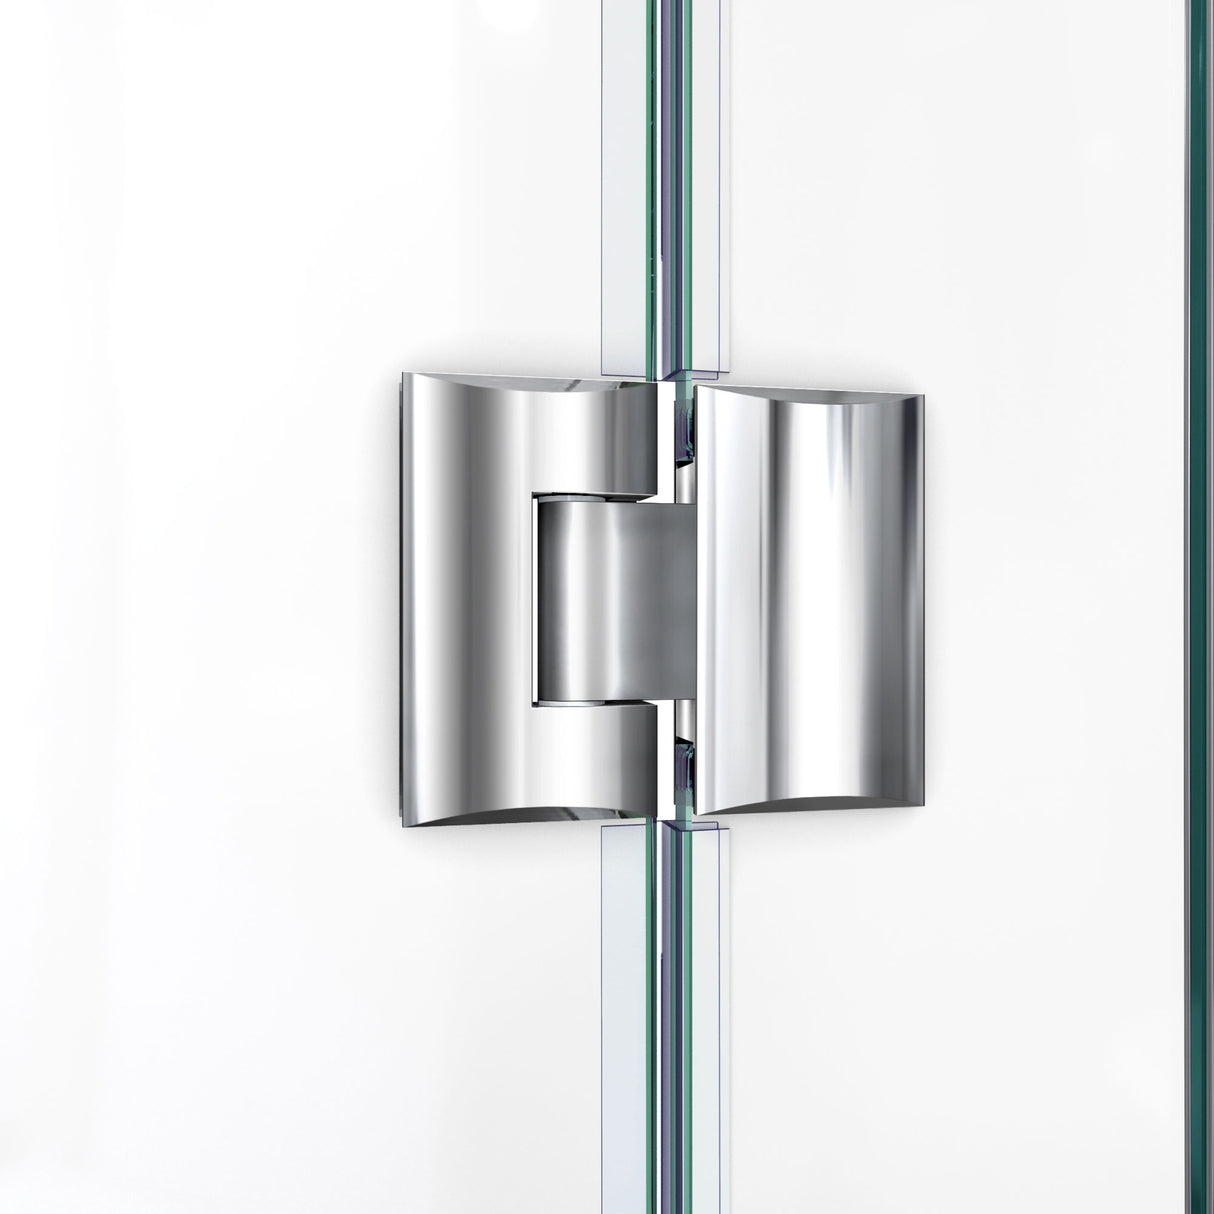 DreamLine Unidoor-X 66-66 1/2 in. W x 72 in. H Frameless Hinged Shower Door in Brushed Nickel